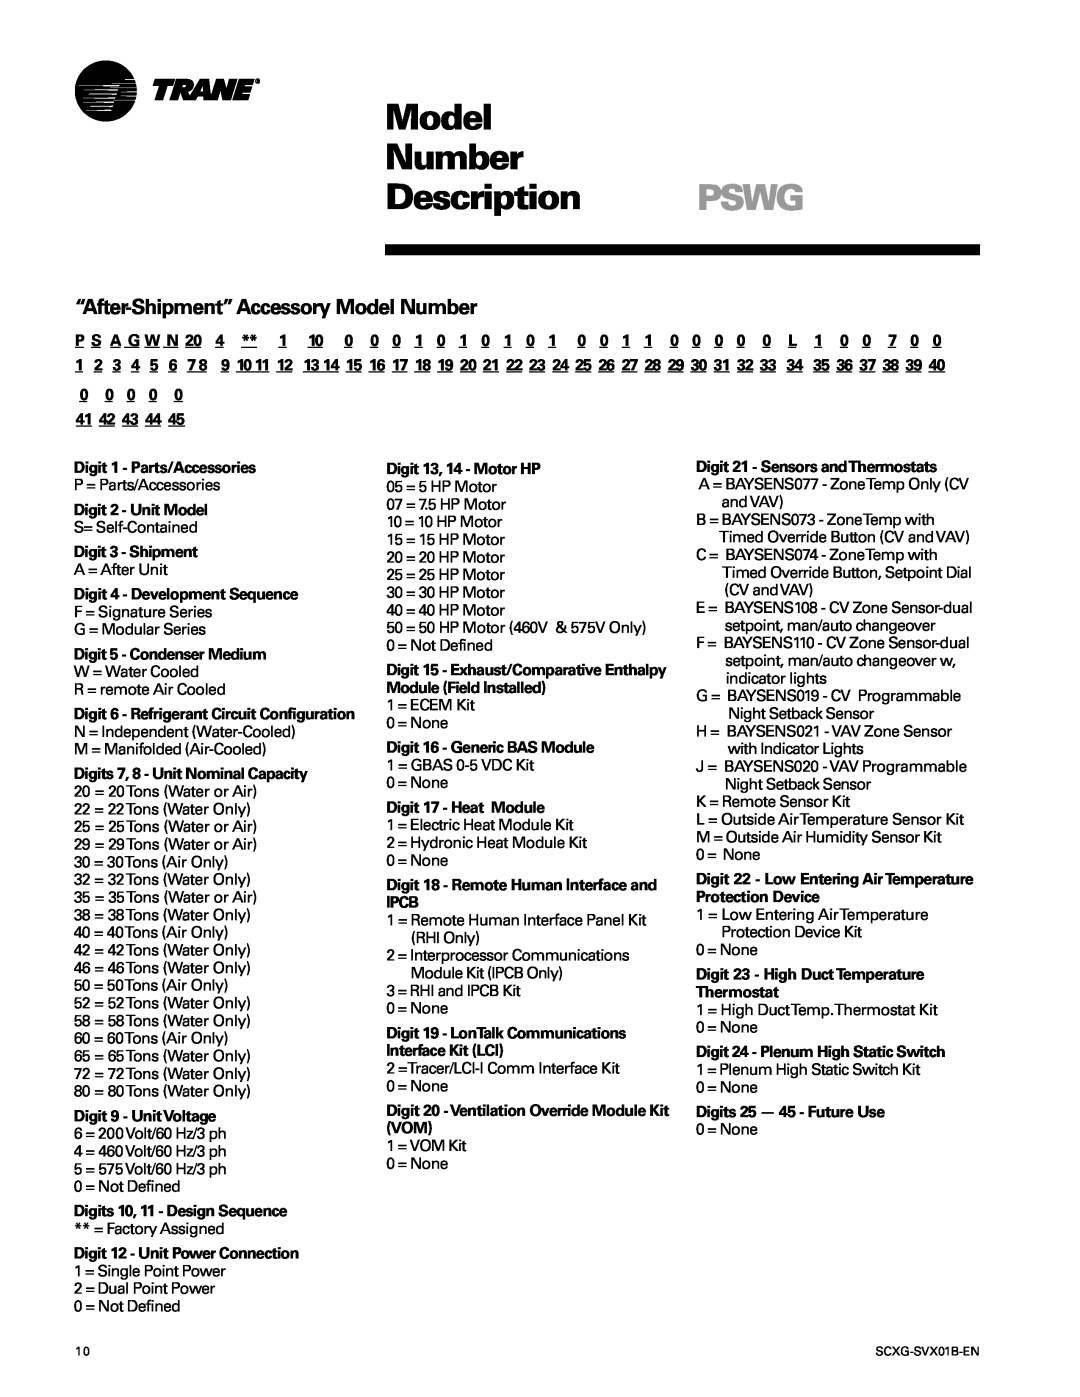 Trane SCXG-SVX01B-EN “After-Shipment”AccessoryModel Number, Model Number Description PSWG, 35 36 37 38, 41 42 43 44, Ipcb 